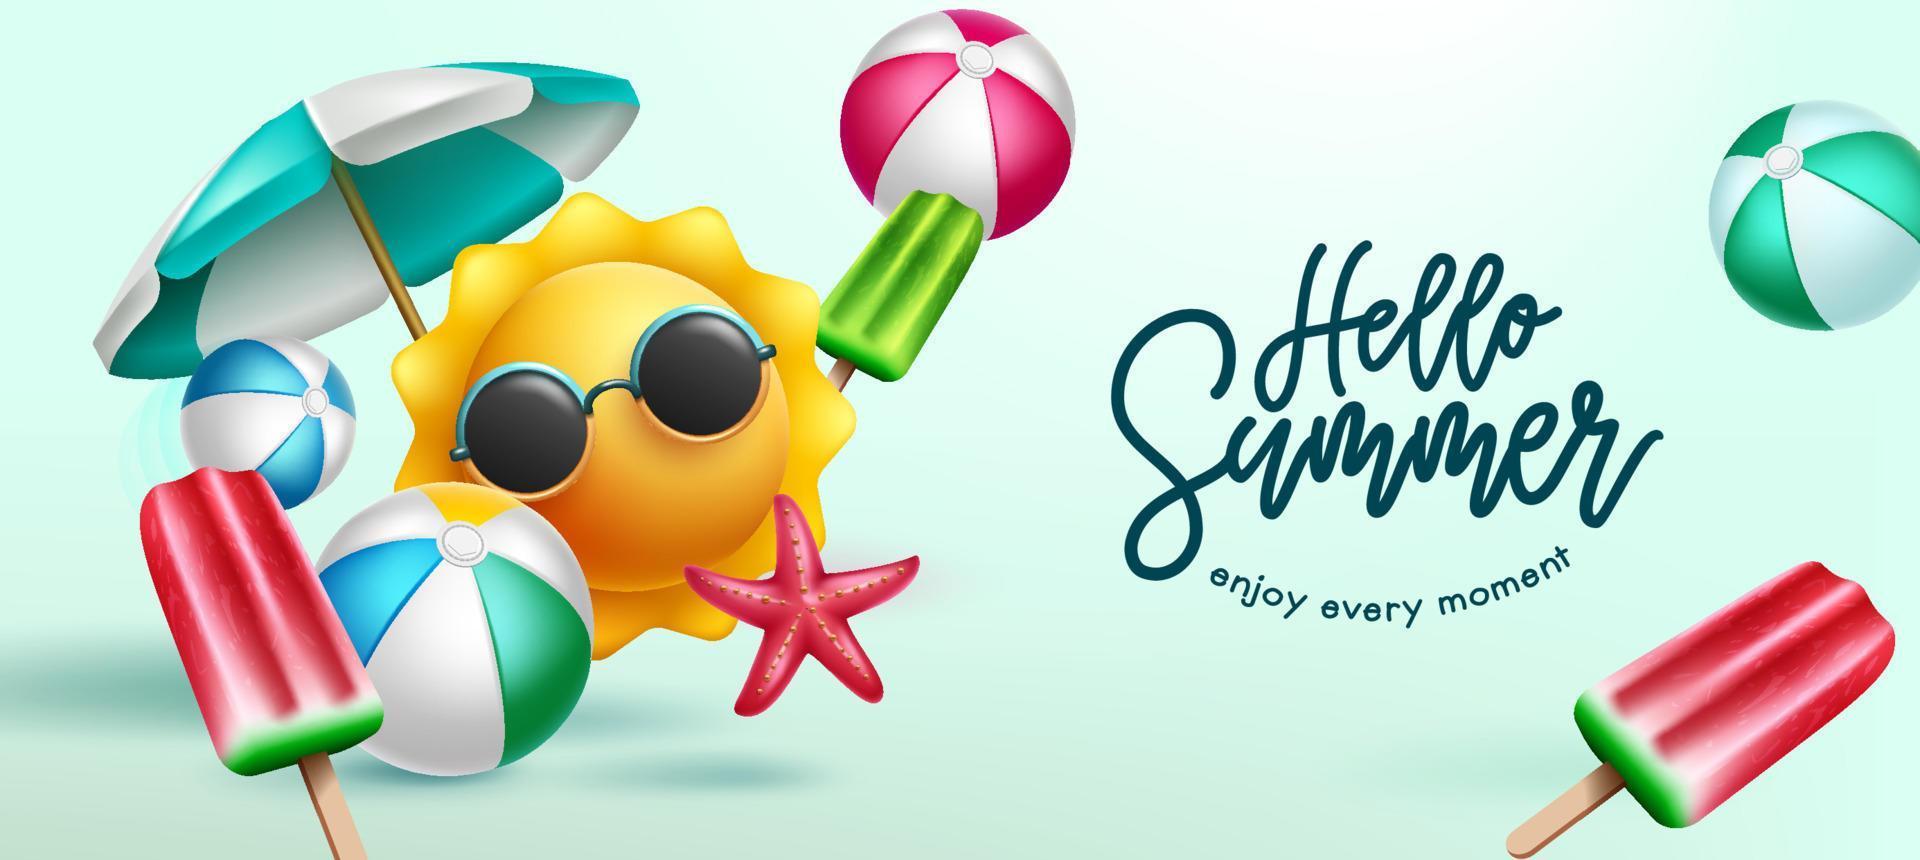 conception de fond de vecteur de vacances d'été. bonjour le texte d'été avec le personnage emoji du soleil et les objets de la saison tropicale pour profiter des vacances de la saison des fêtes. illustration vectorielle.